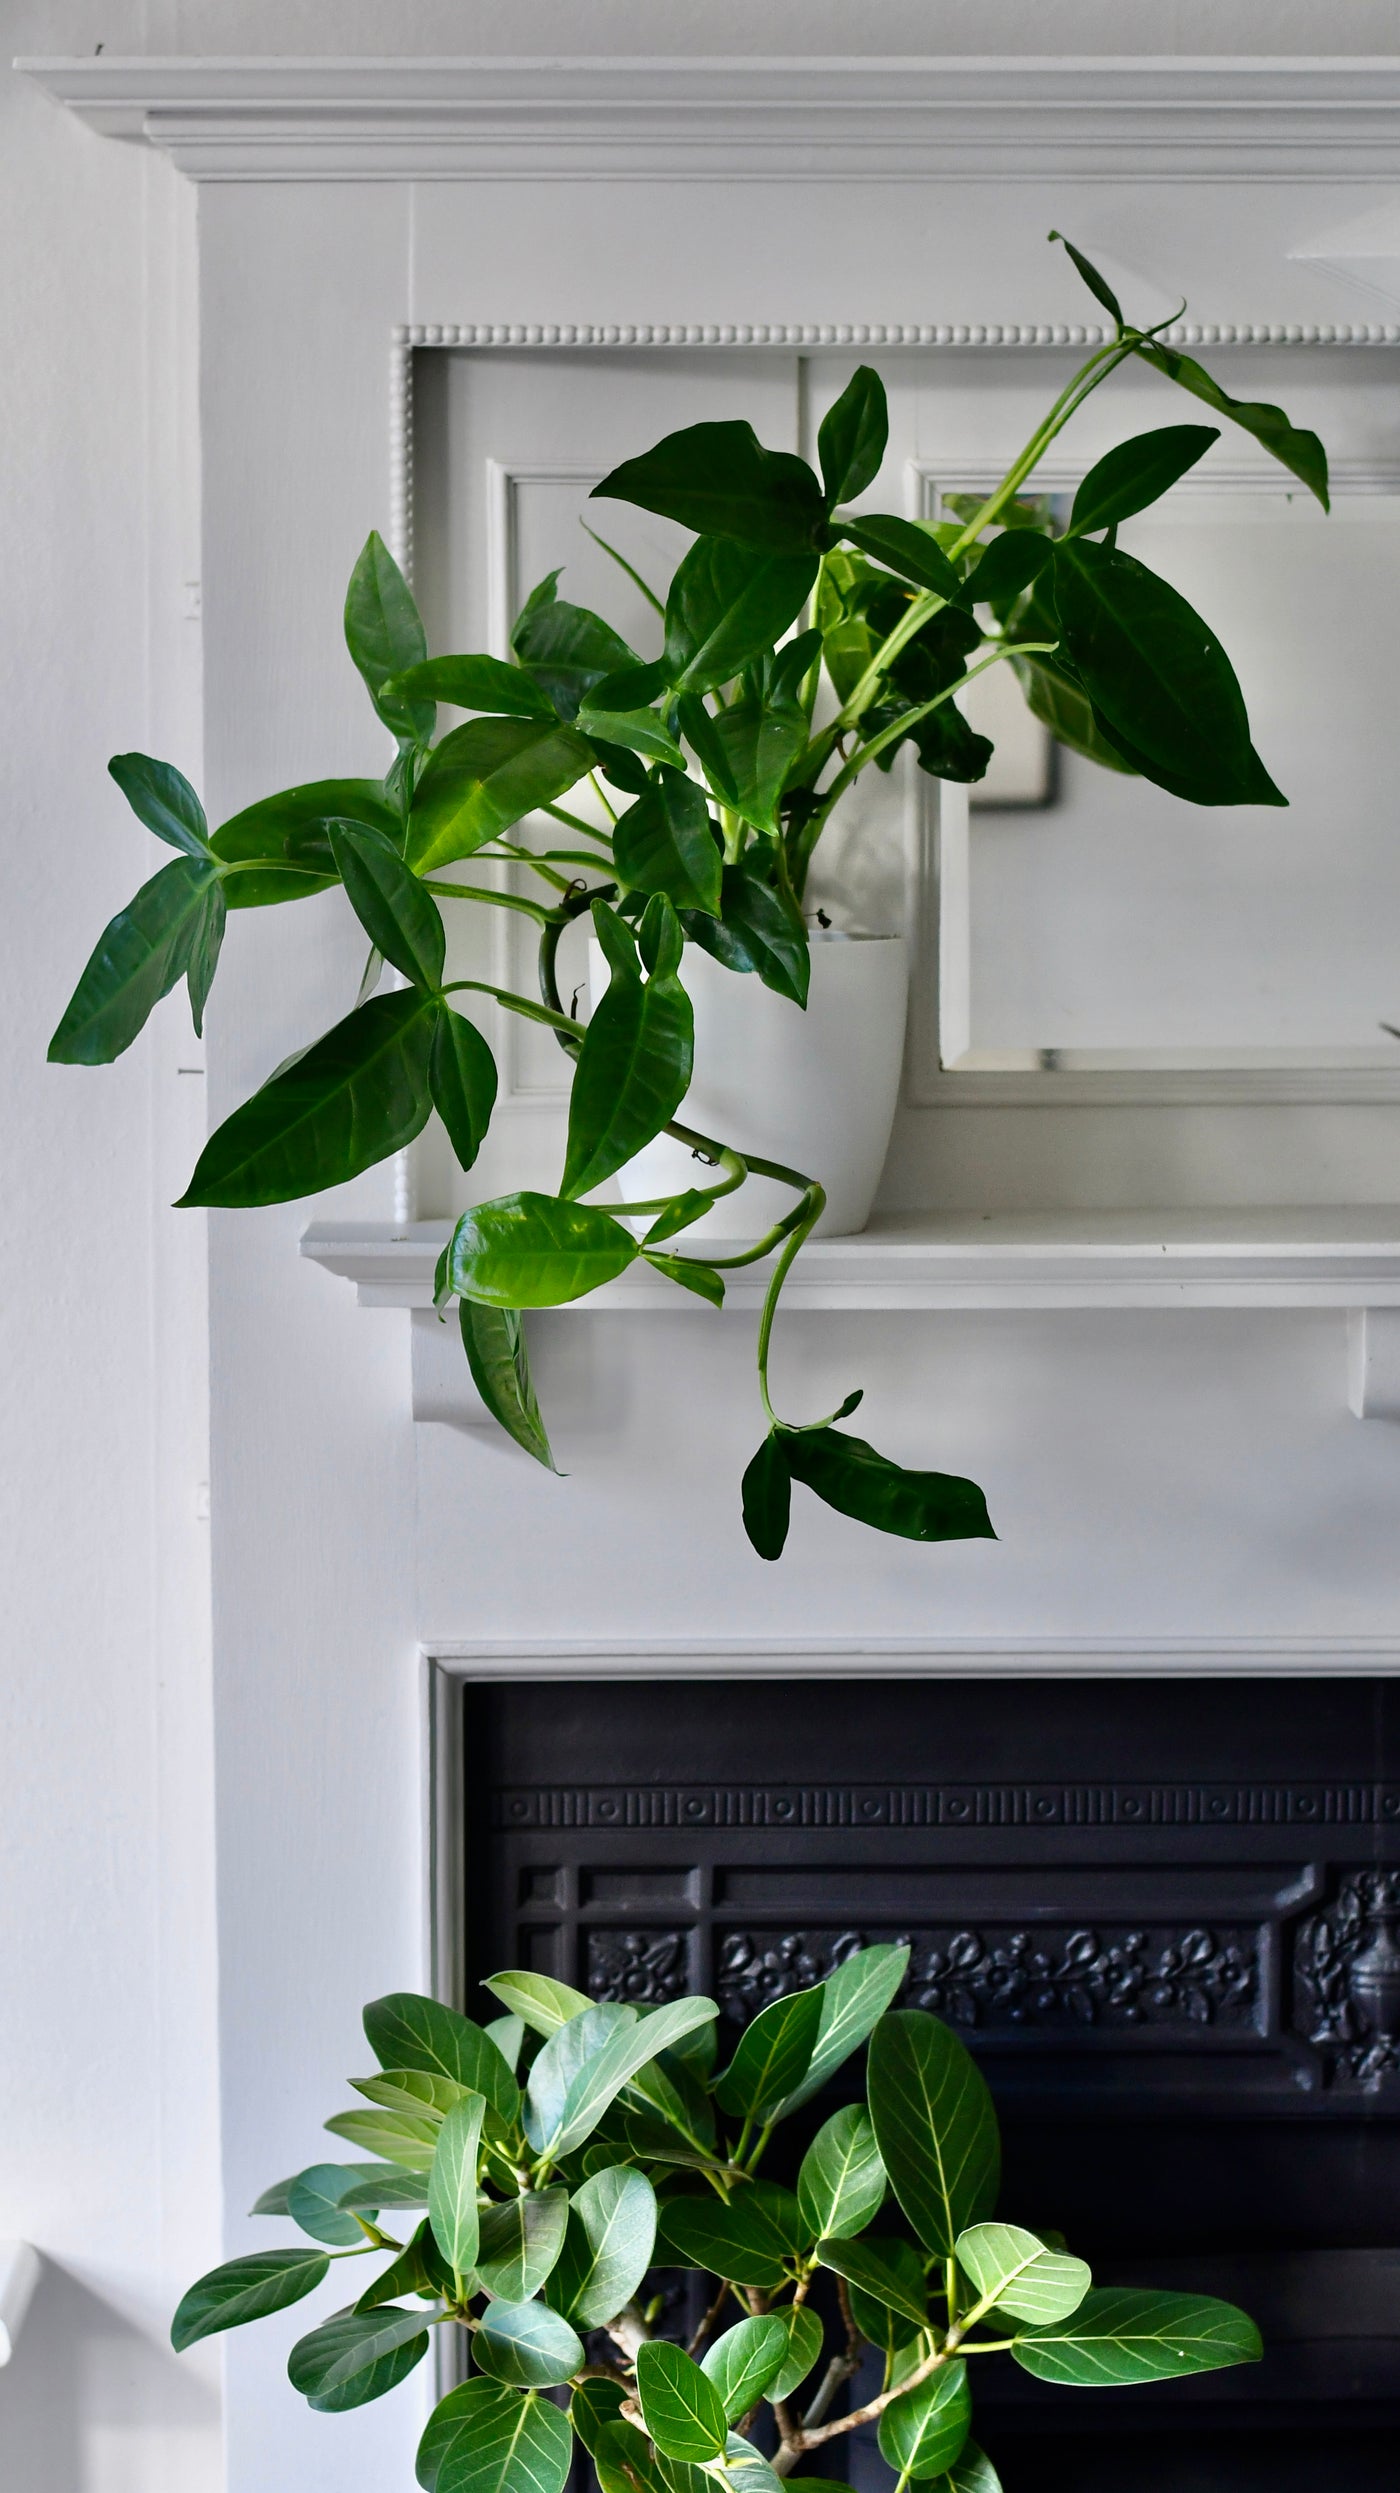 Syngonium Podophyllum or 'Tri-Leaf Wonder’ & Brussels Pot